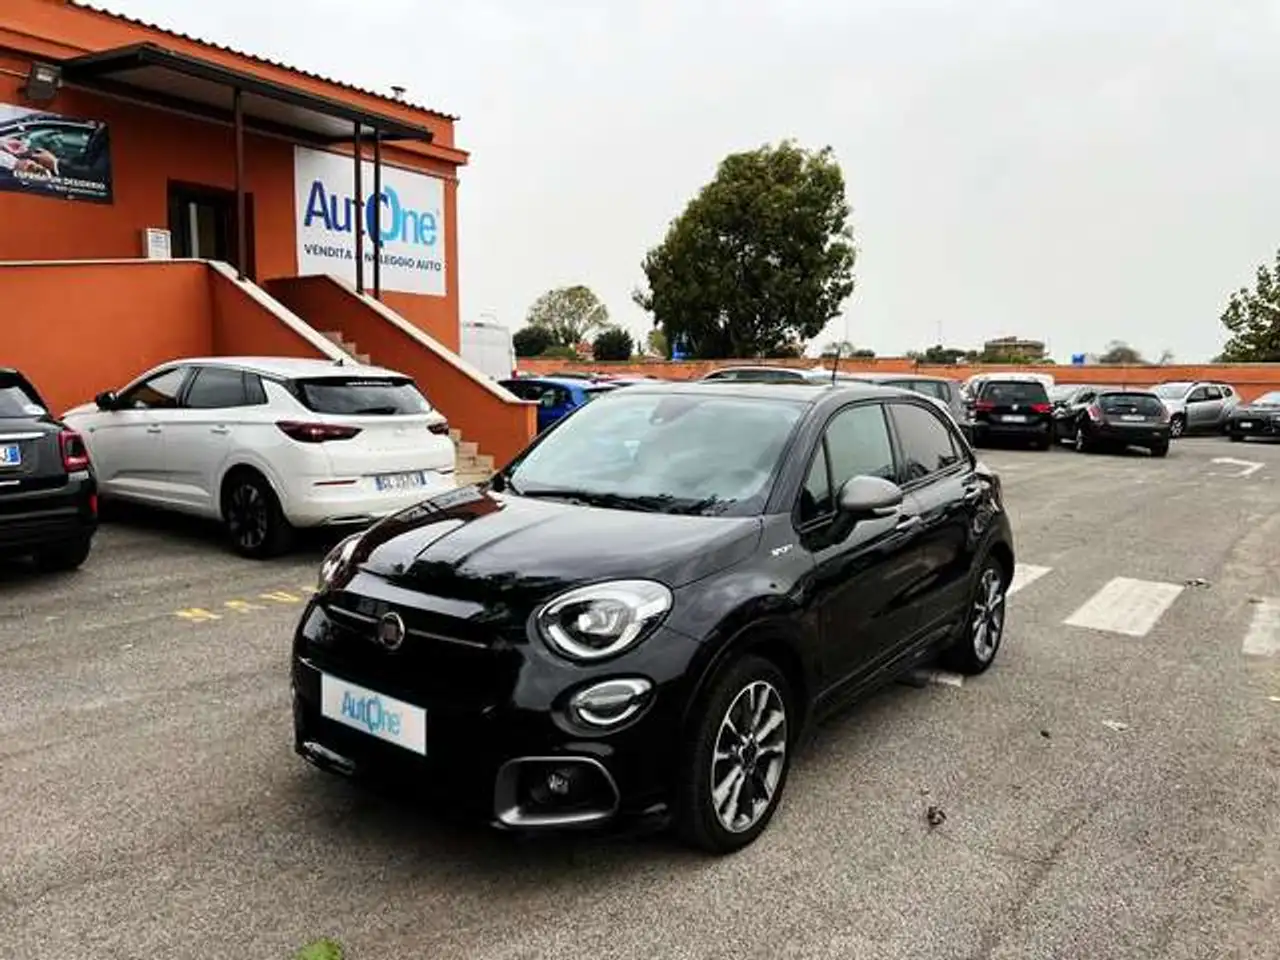 Fiat 500X SUV/4x4/Pick-up in Zwart demo in Bari - BA voor € 16.900,-